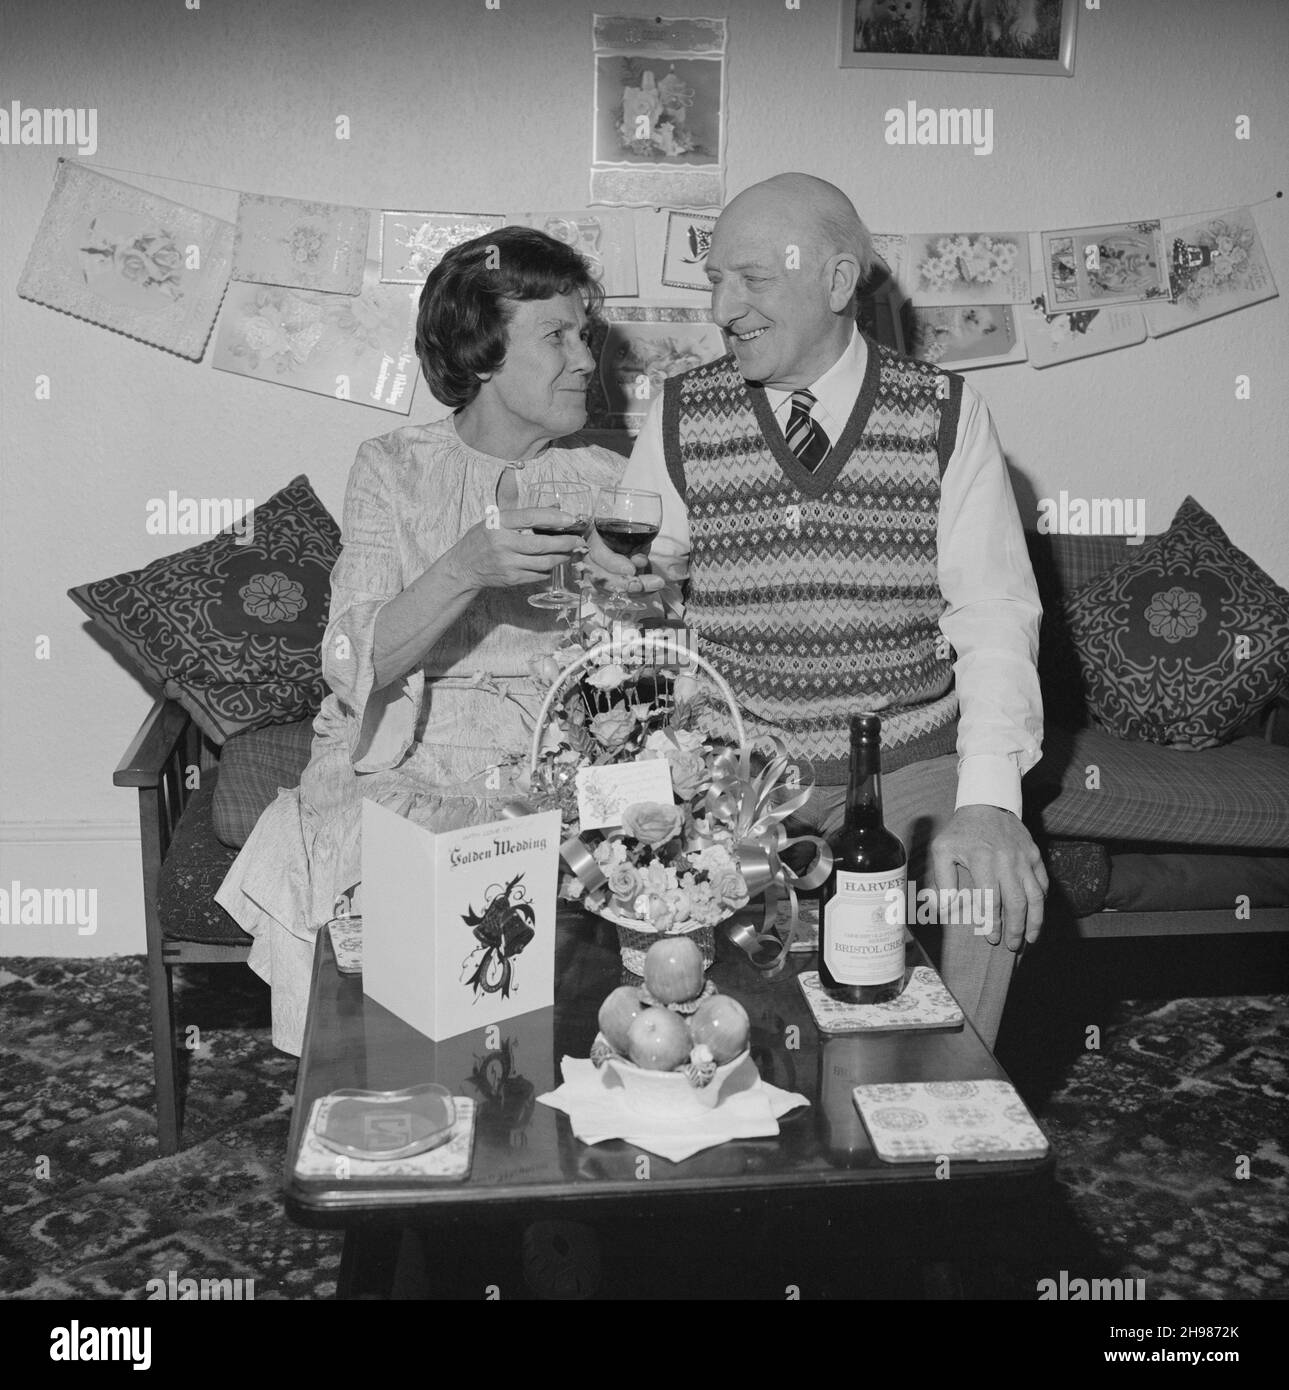 Herr und Frau Birtmead toasting zu ihrem goldenen Hochzeitstag, 26/04/1984. Herr und Frau Birtmead toasting zu ihrem goldenen Hochzeitstag, während sie in ihrem Haus zwischen Karten und Geschenken sitzen. Stockfoto